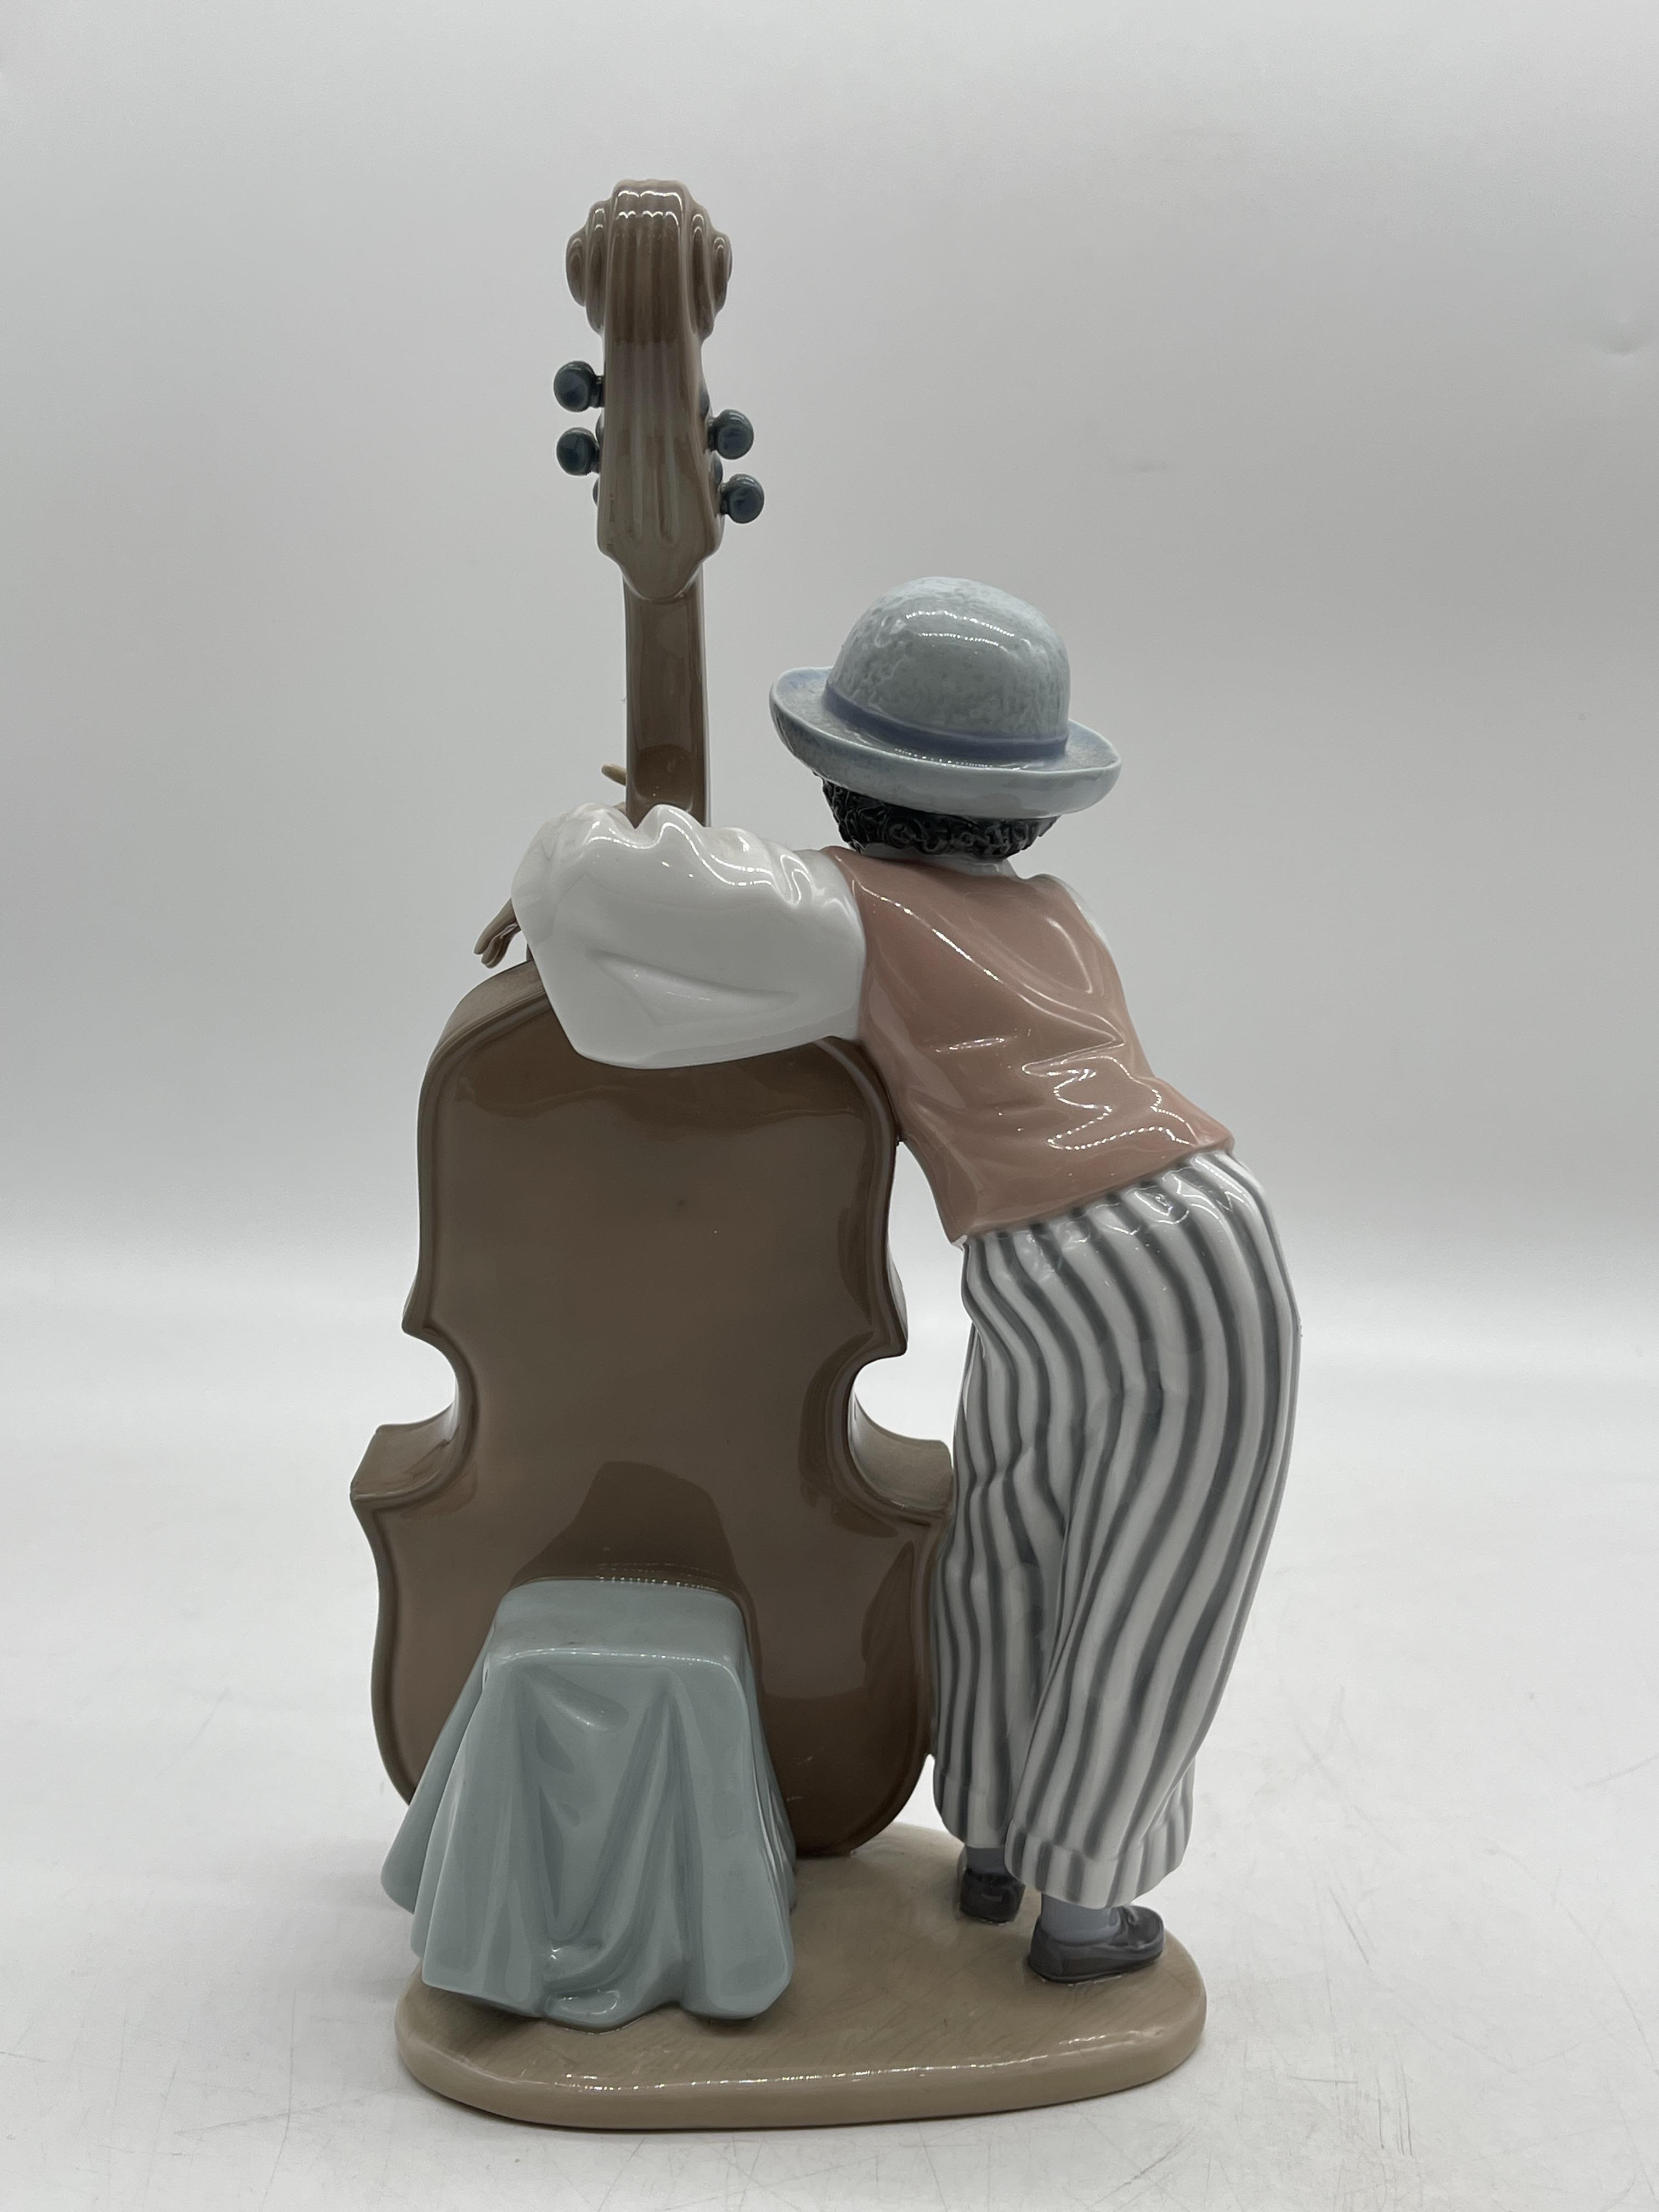 Ceramic Jazz Band - Image 8 of 46